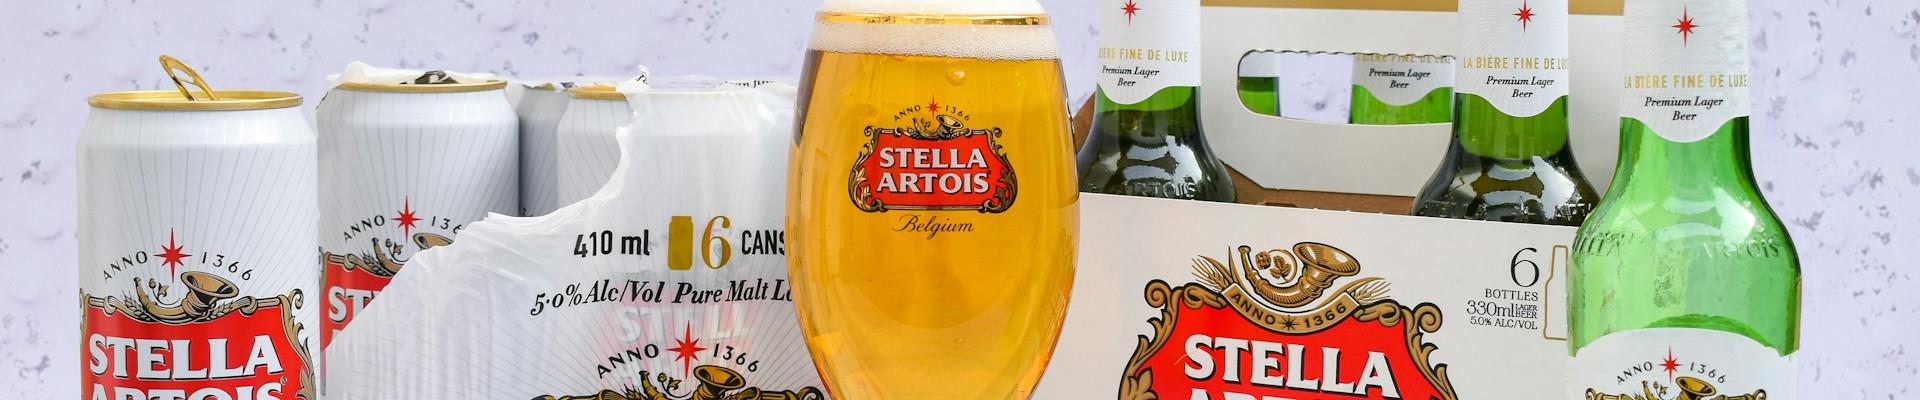 Roupas e acessórios da Stella Artois para facilitar o “roubo” das taças com o logo da marca